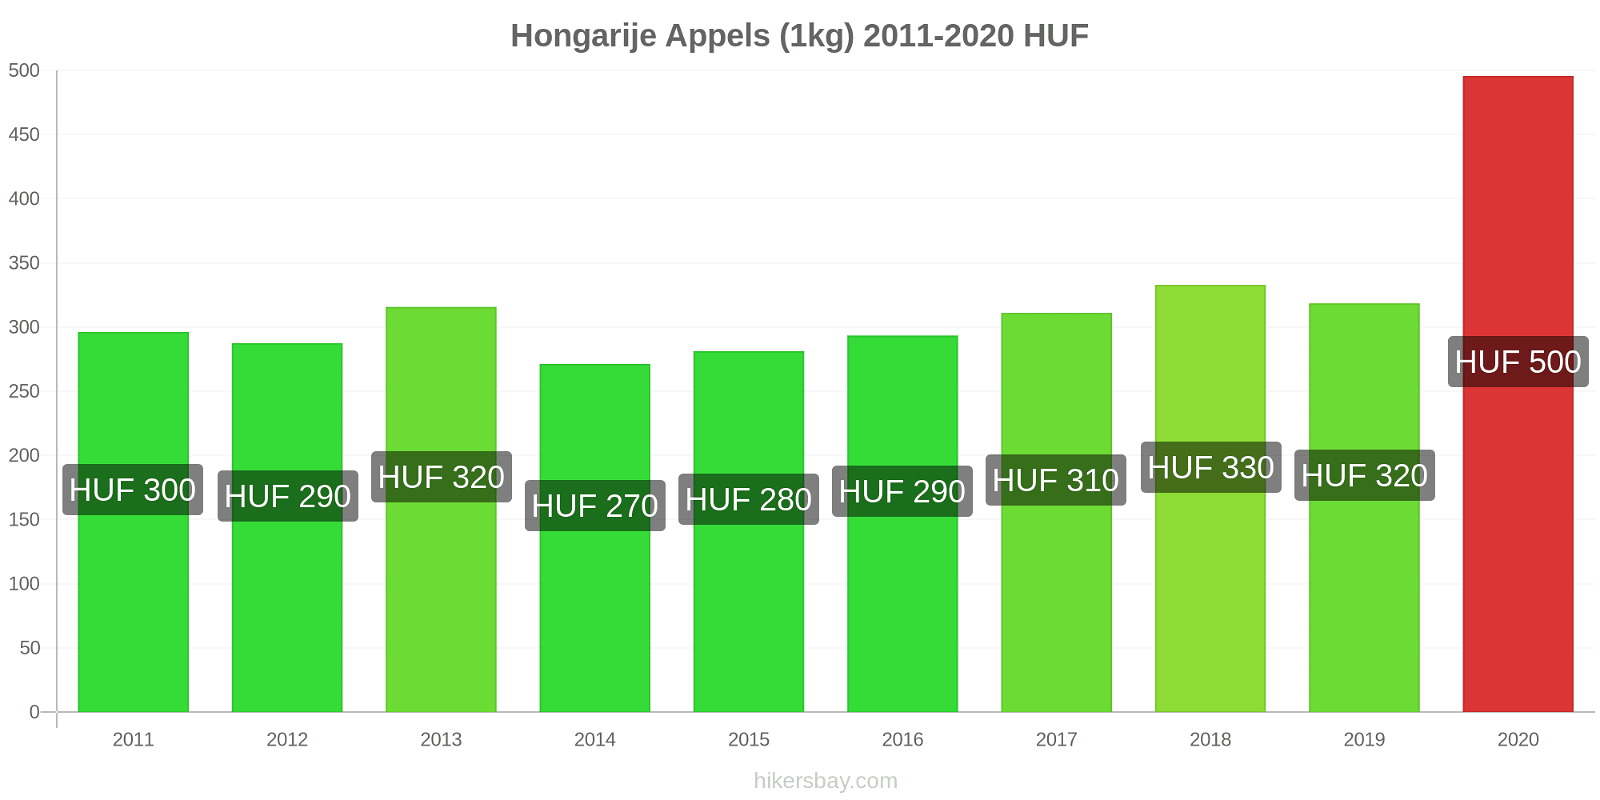 Hongarije prijswijzigingen Appels (1kg) hikersbay.com